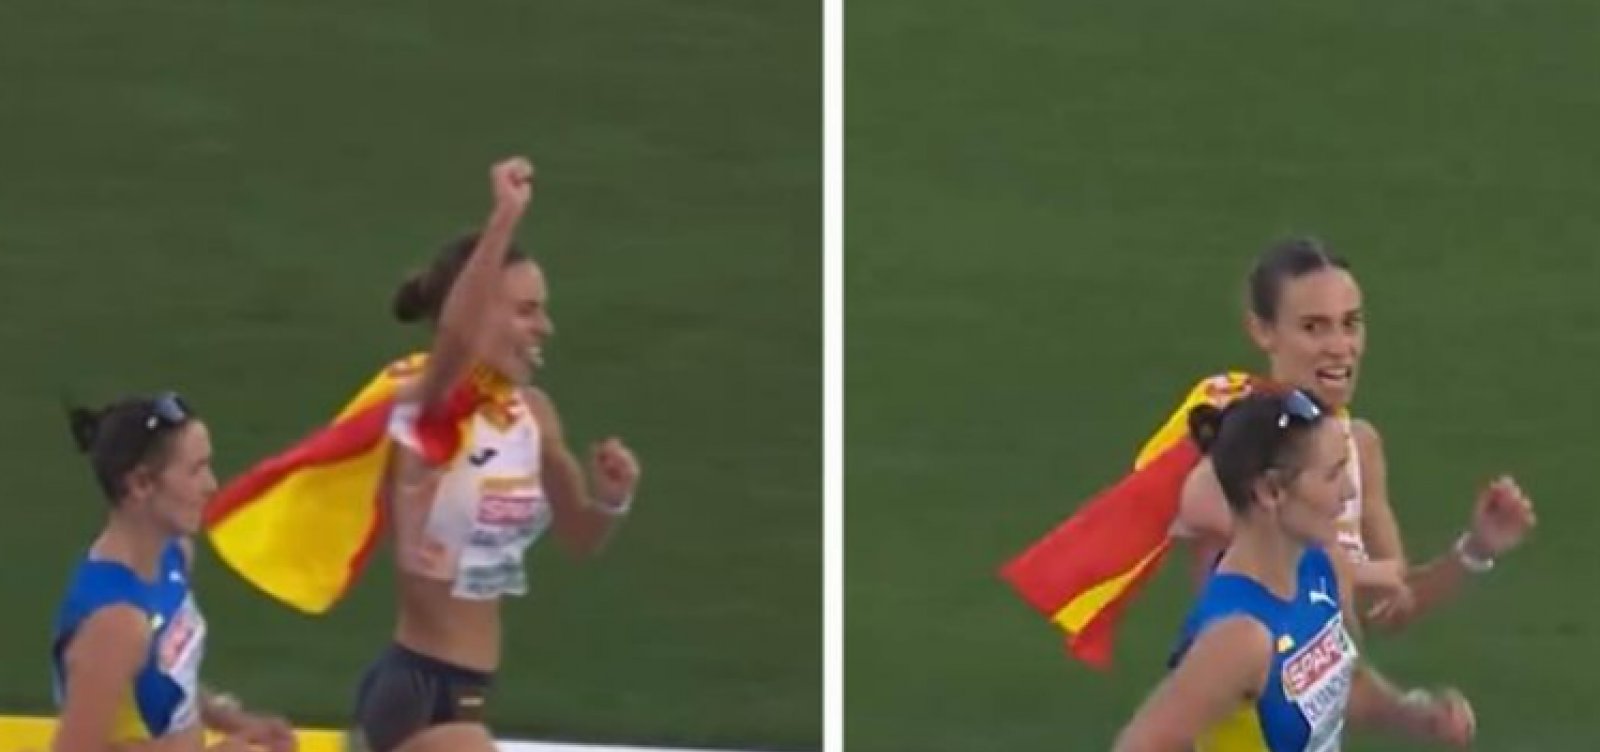 Atleta espanhola de marcha atlética comemora antes da hora e é ultrapassada